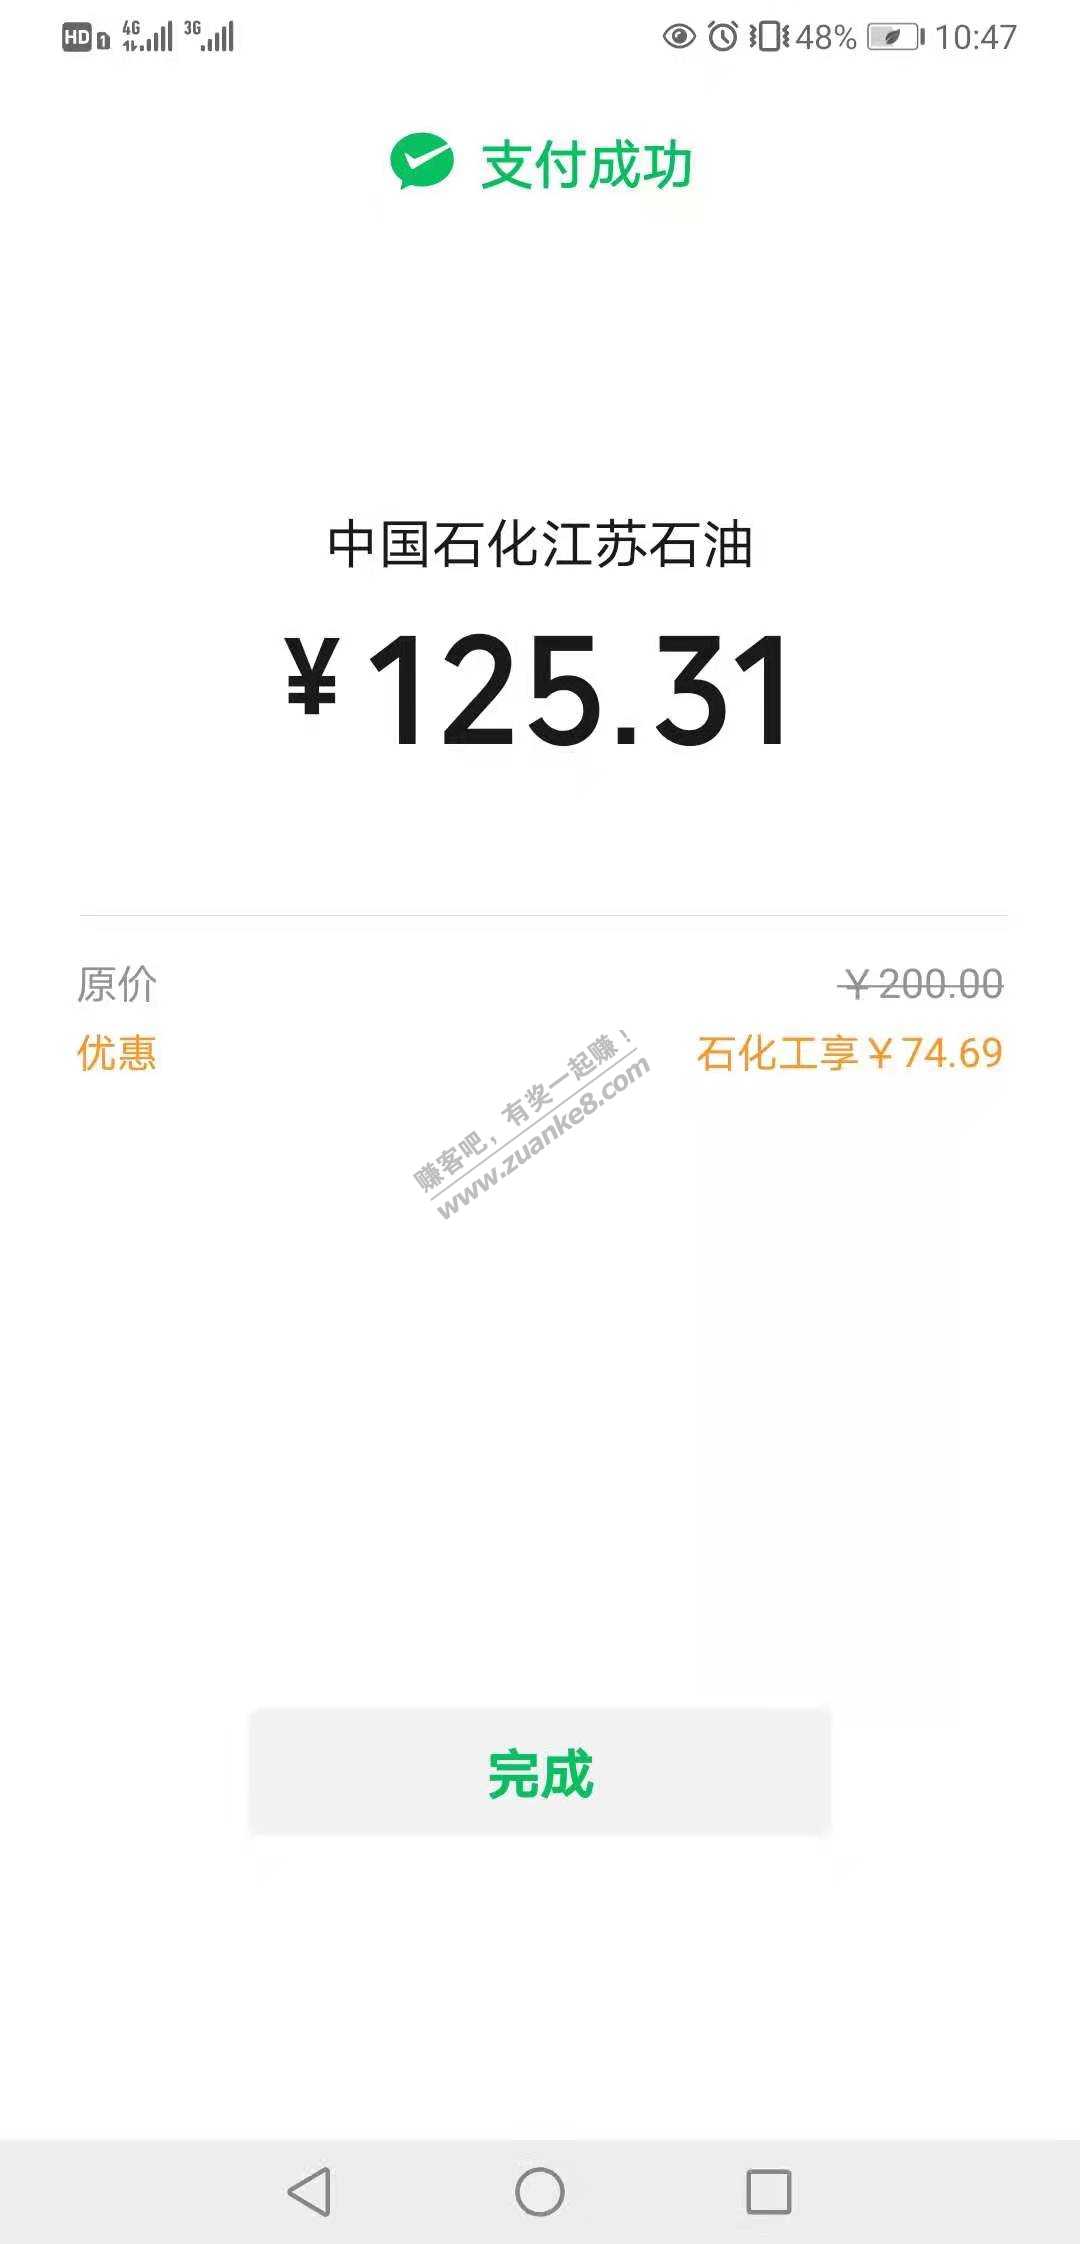 速度江苏石化水了-惠小助(52huixz.com)